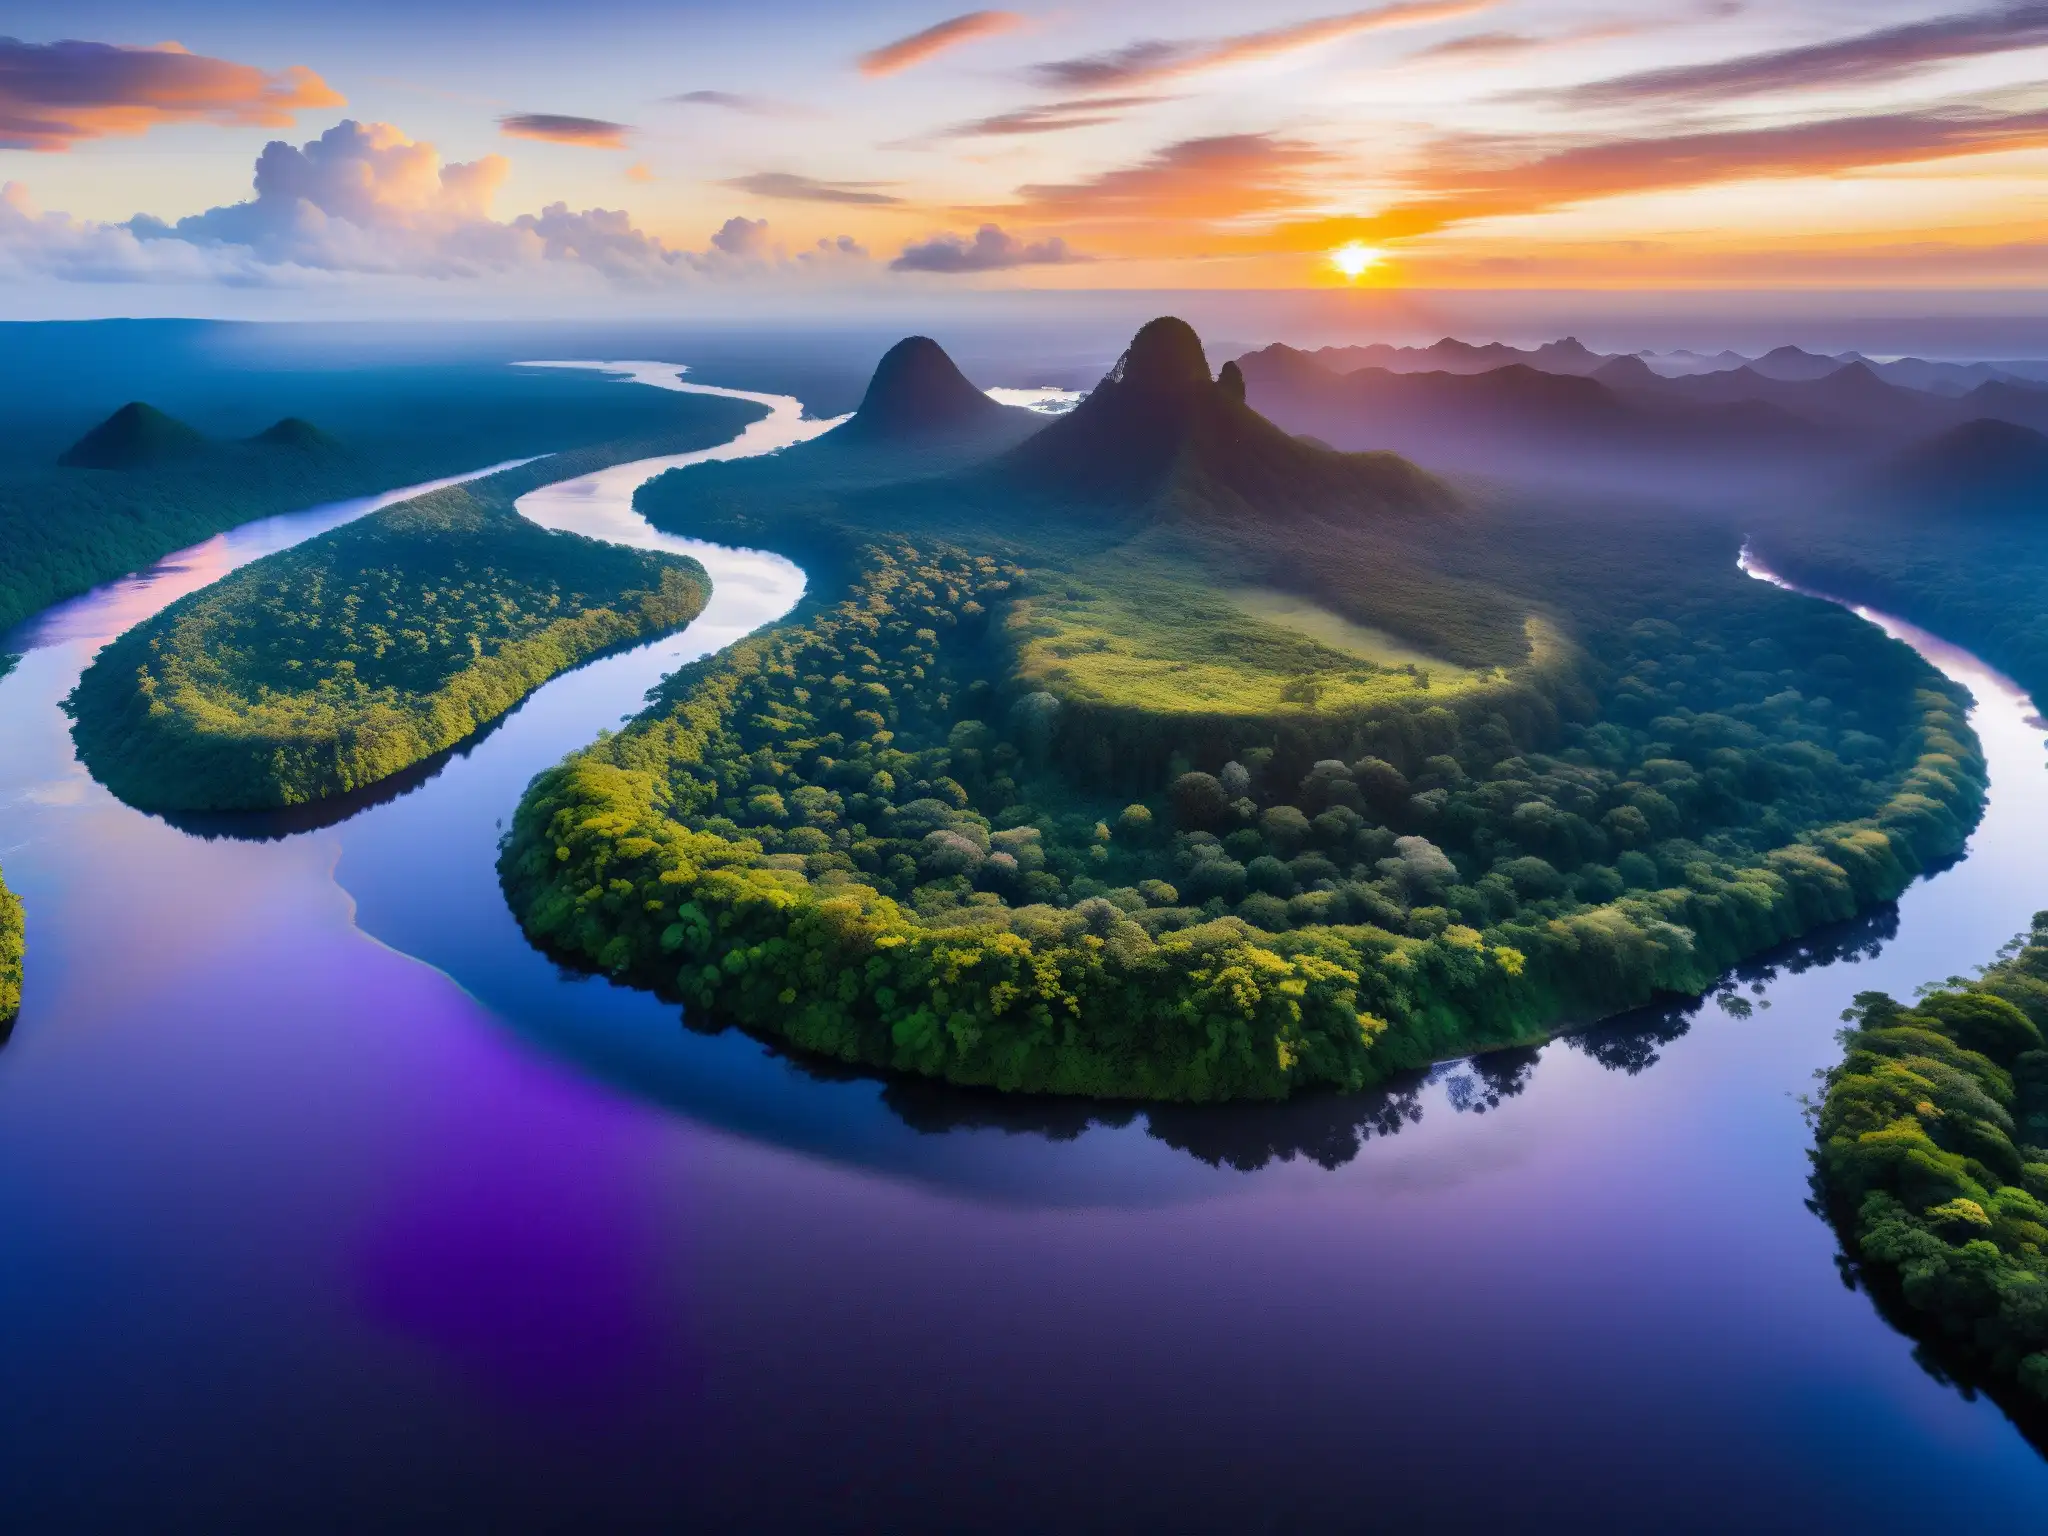 La Madre del Agua en el Amazonas: Atardecer deslumbrante en el río Amazonas, con vibrantes colores reflejados en el agua y exuberante vegetación